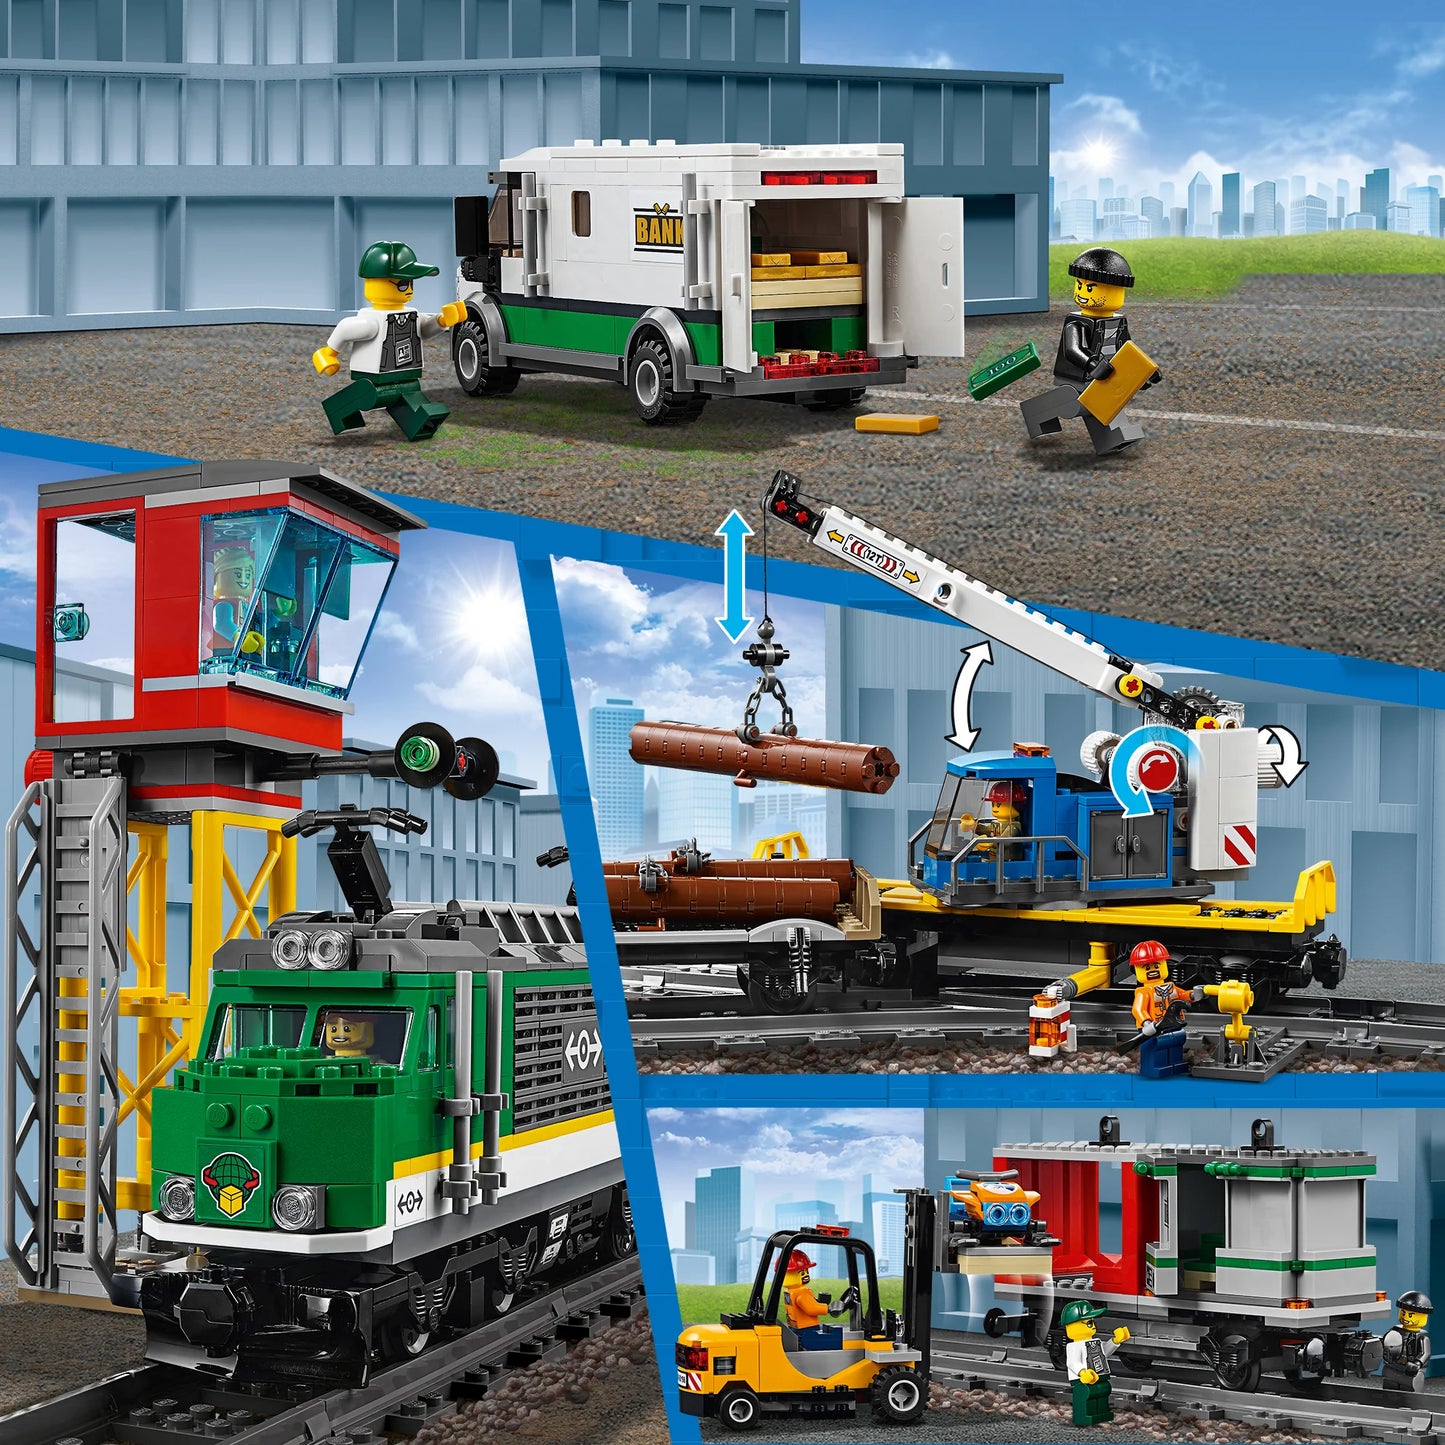 Vrachttrein-LEGO City